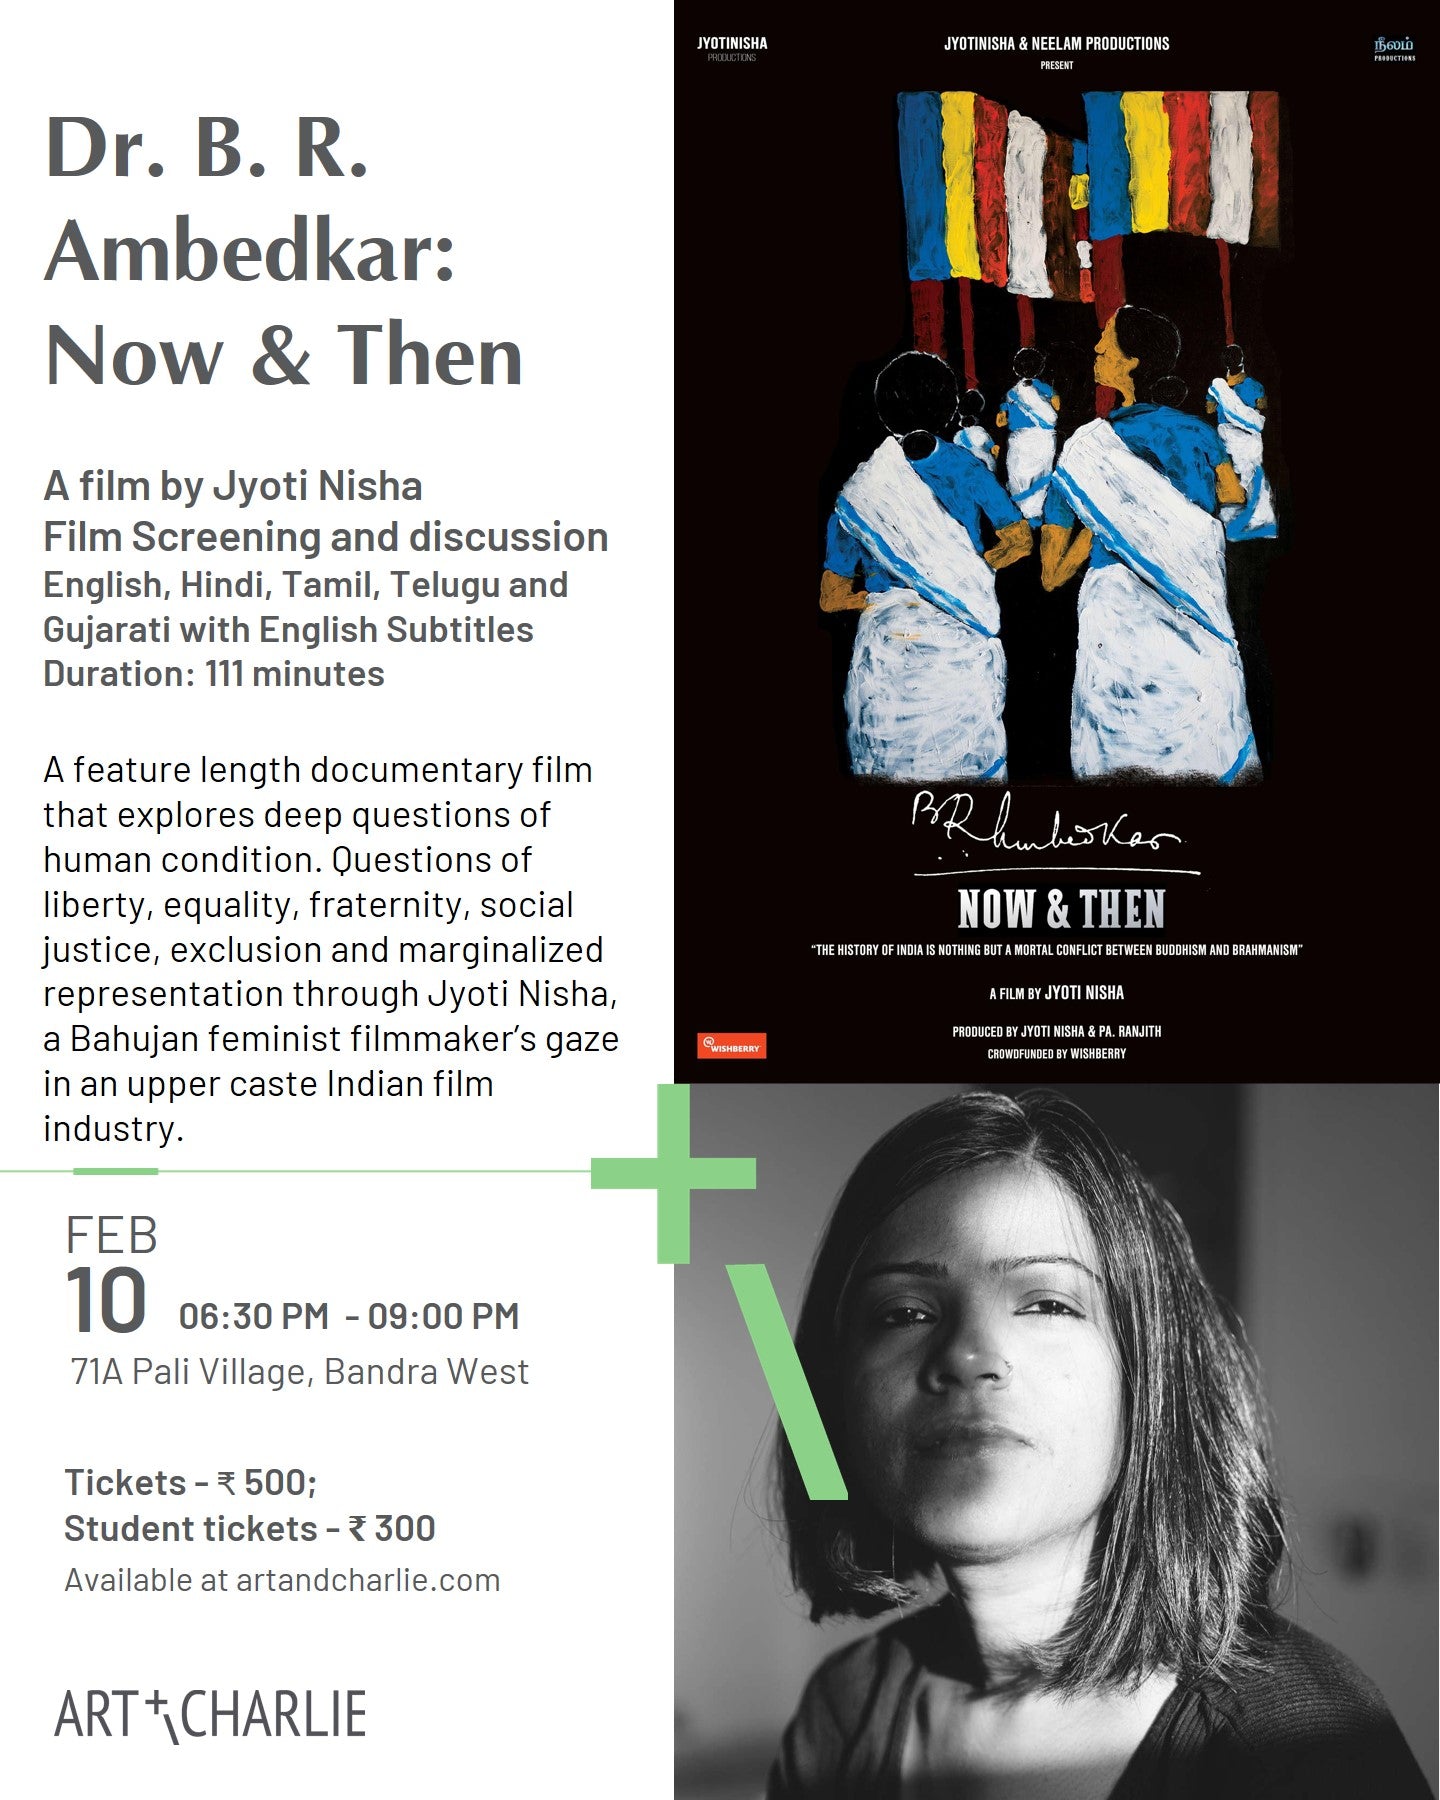 Ticket - Feb 10 - Film Screening and discussion - Jyoti Nisha - 6:30 PM